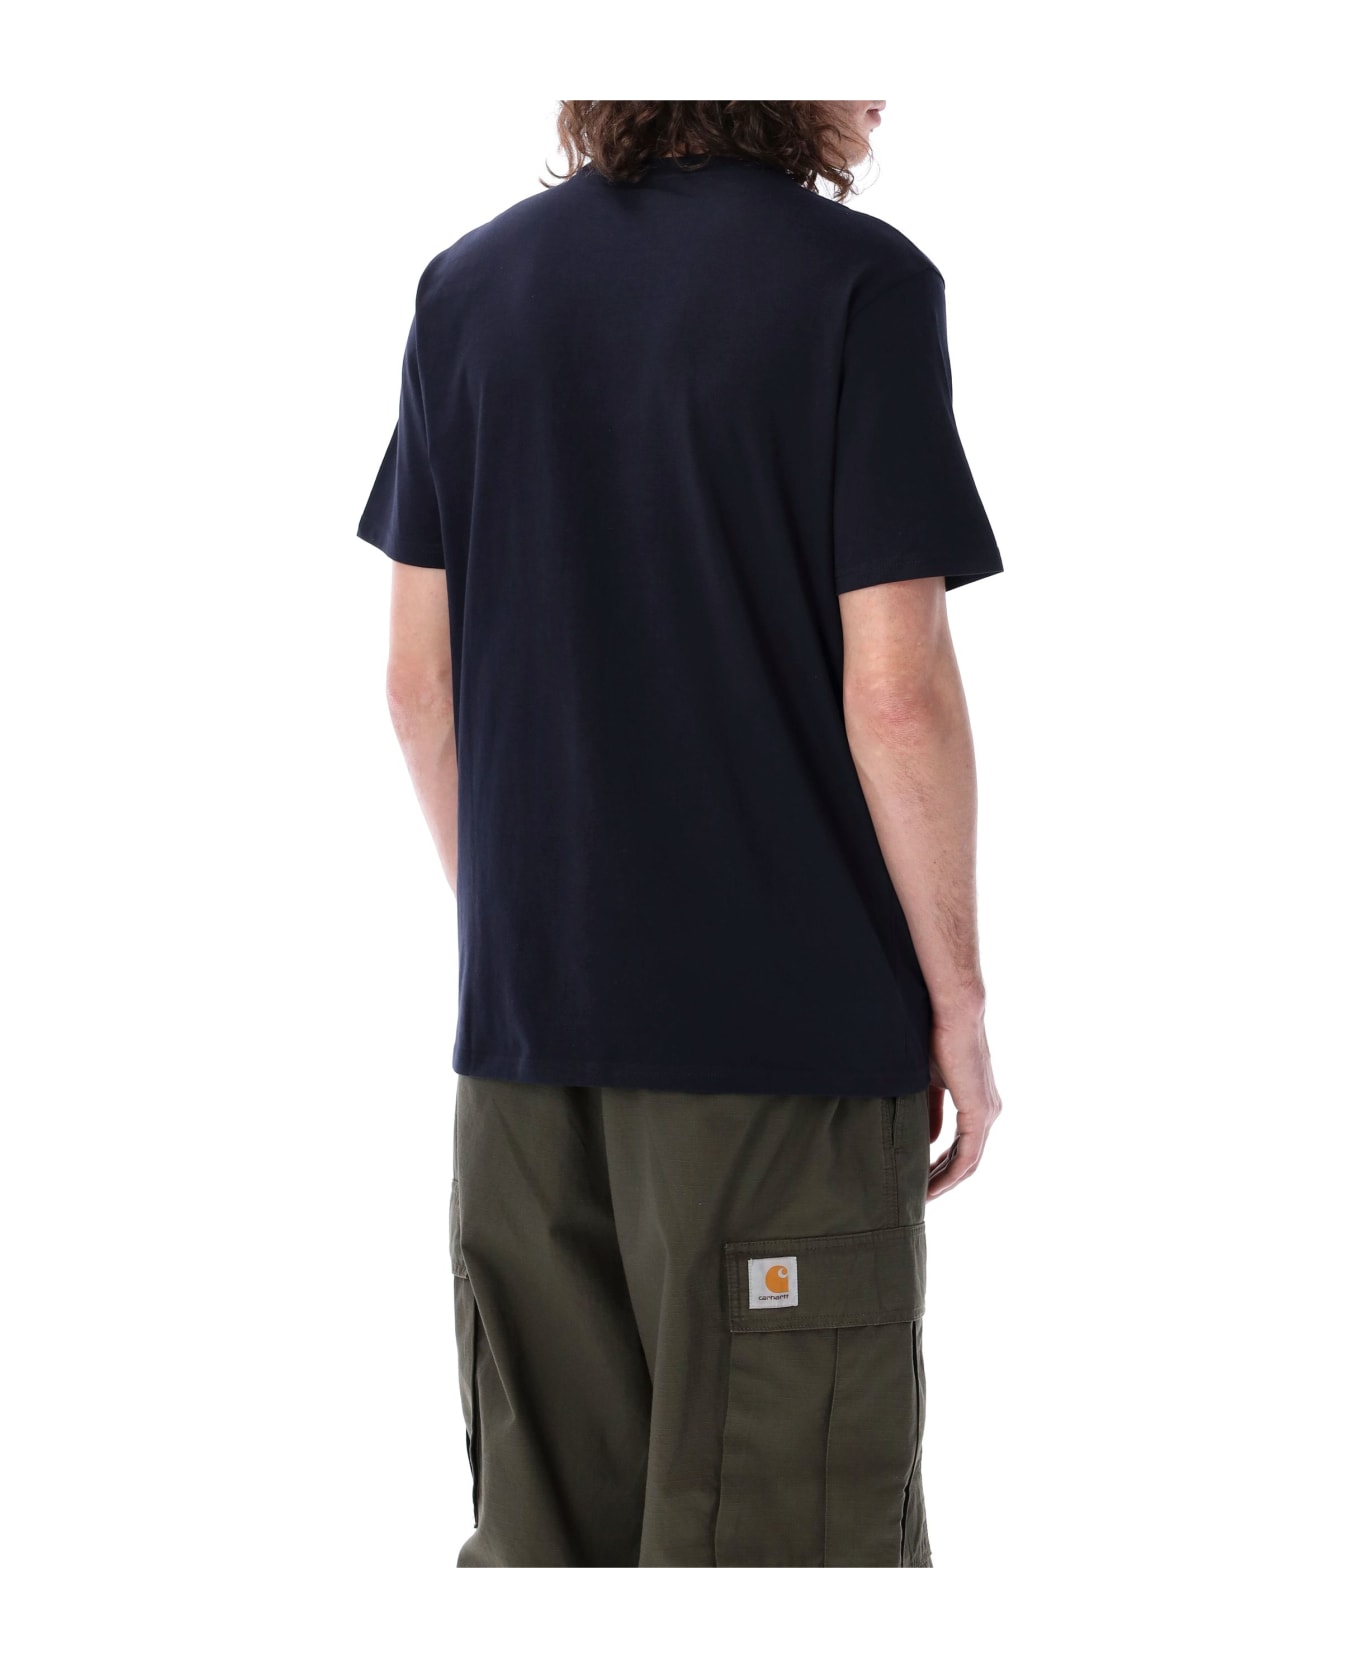 Carhartt Pocket T-shirt - DARK NAVY